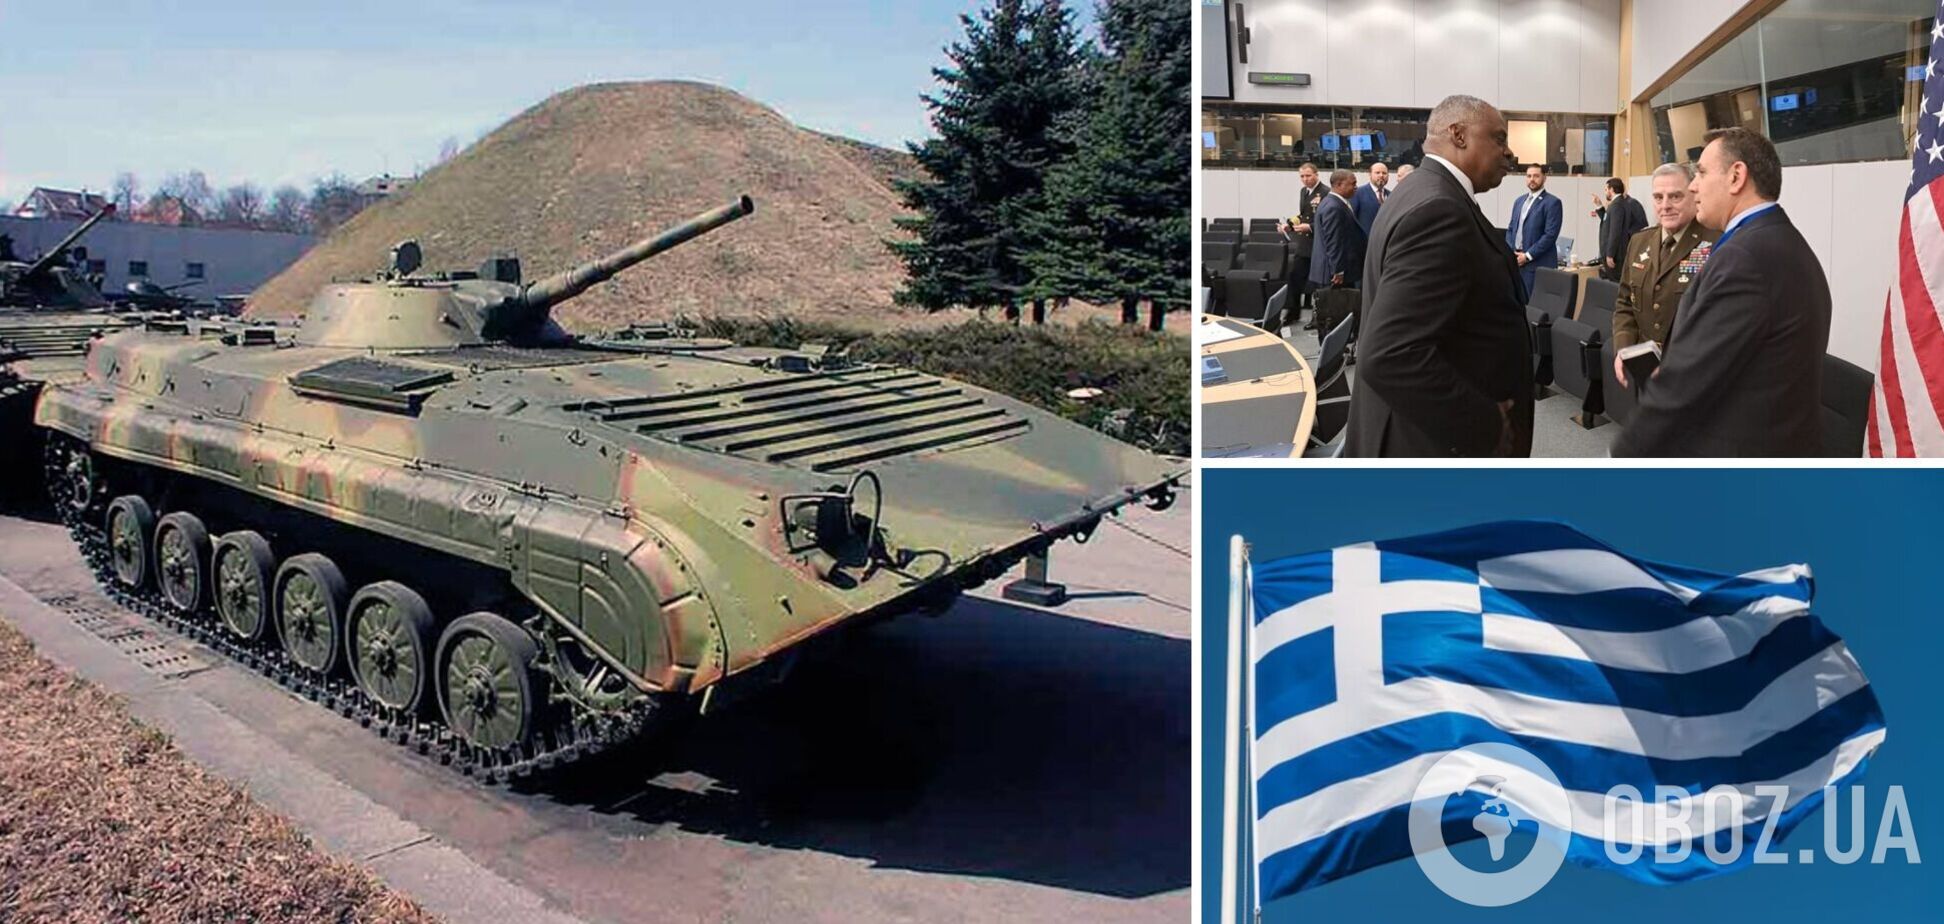 Греция передала Украине боеприпасы и 20 бронированных машин БМП-1, - министр обороны